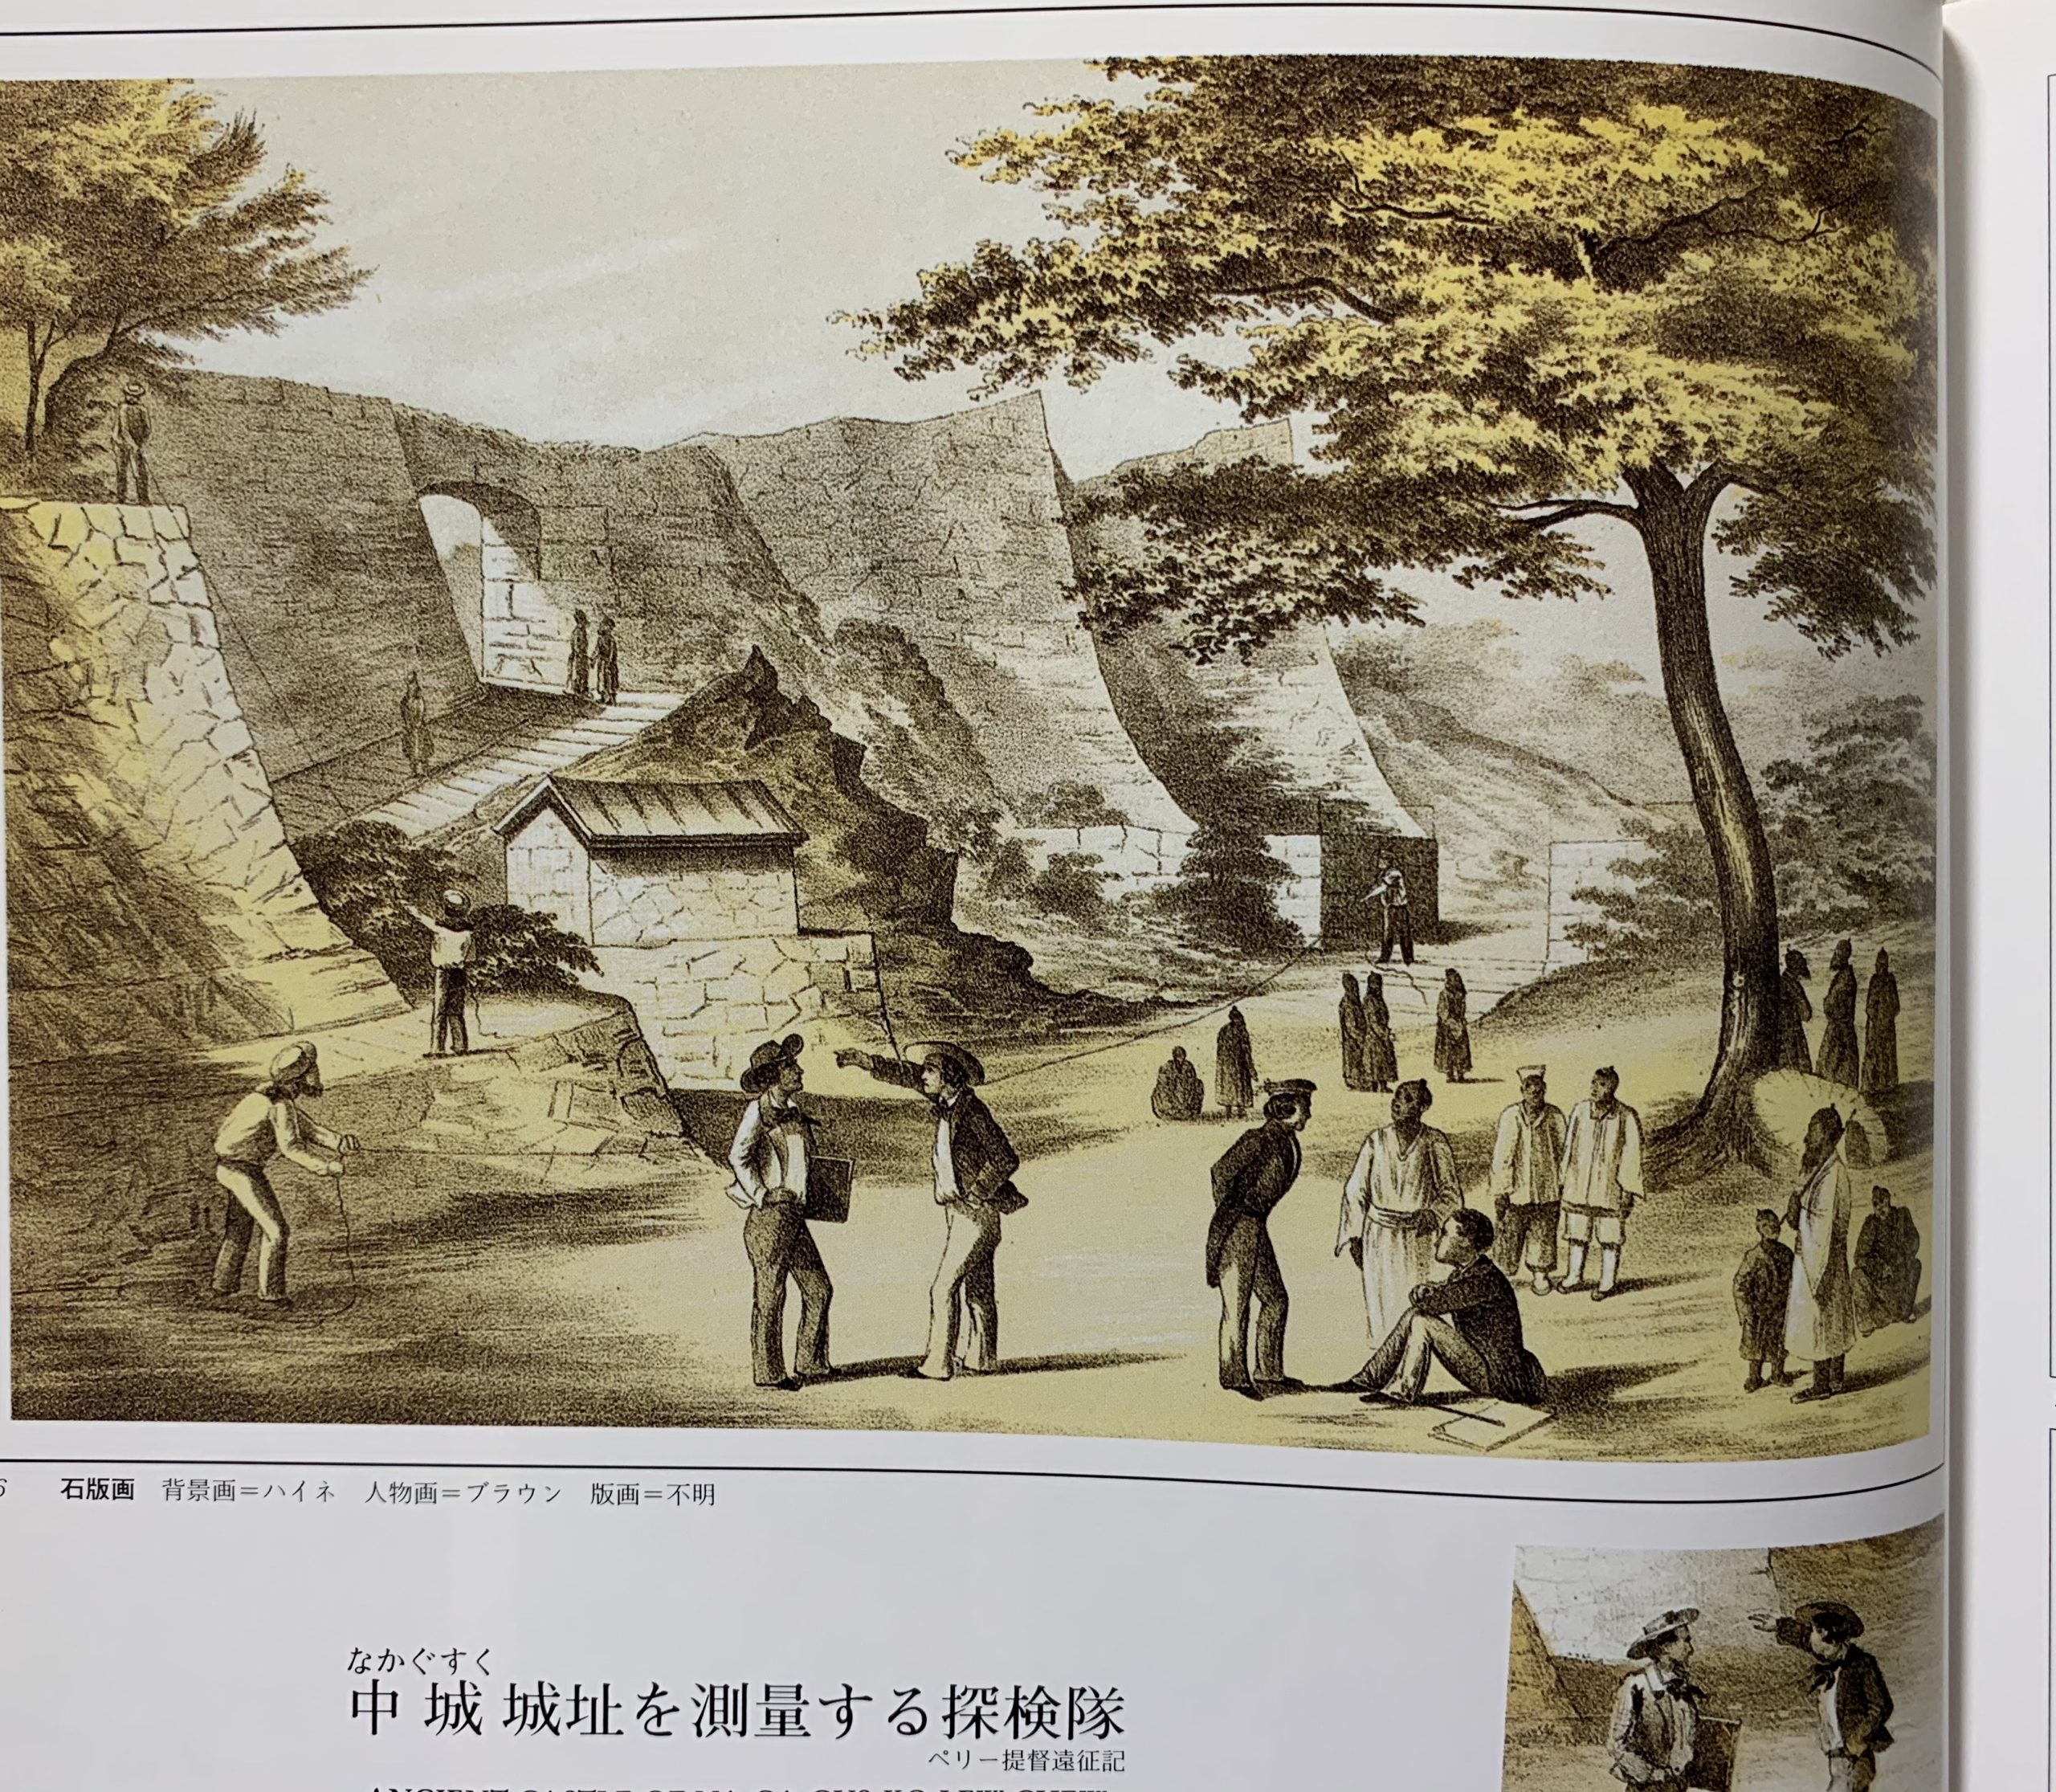 真作】ペリー提督日本遠征記より「中城城跡、琉球」1856年発行